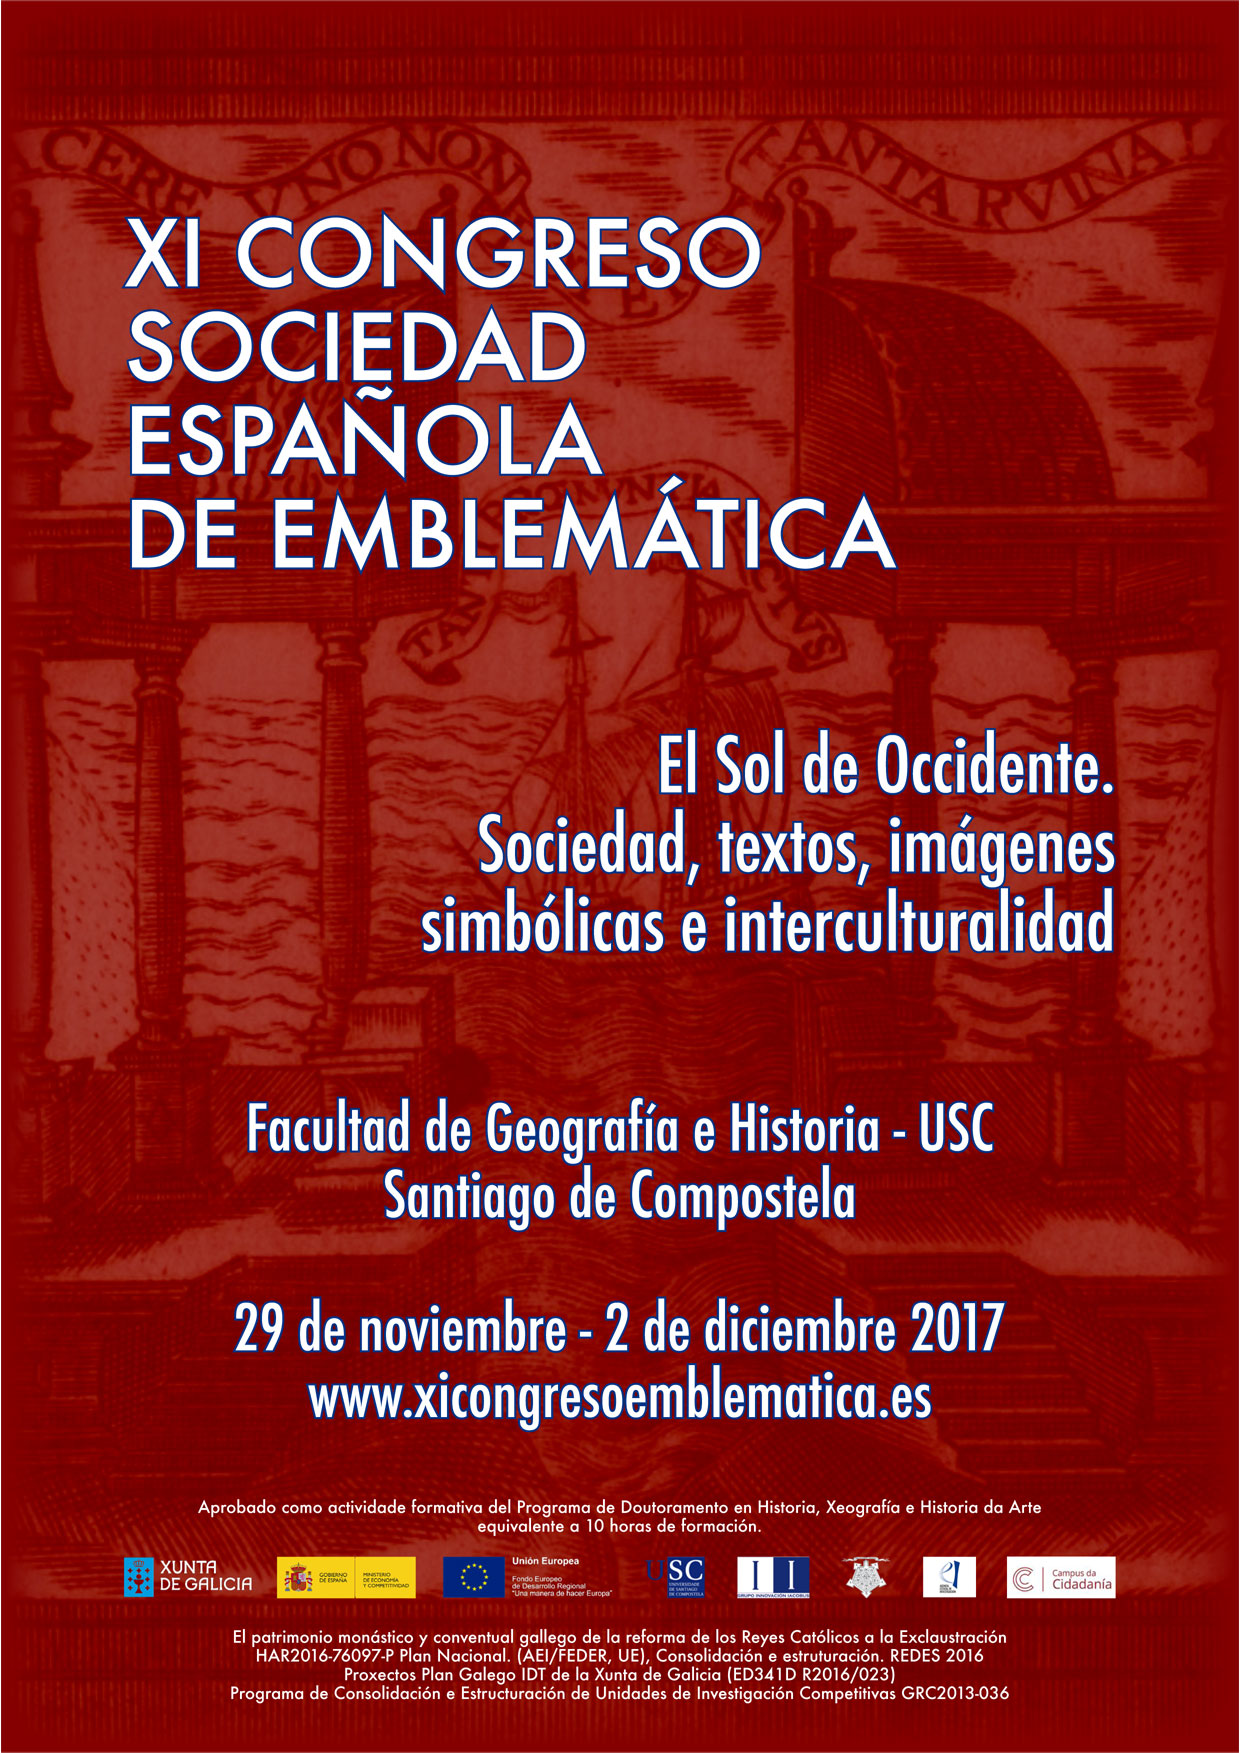 XI Congreso de la Sociedad Española de Emblemática. El Sol de Occidente. Sociedad, textos, imágenes simbólicas e interculturalidad